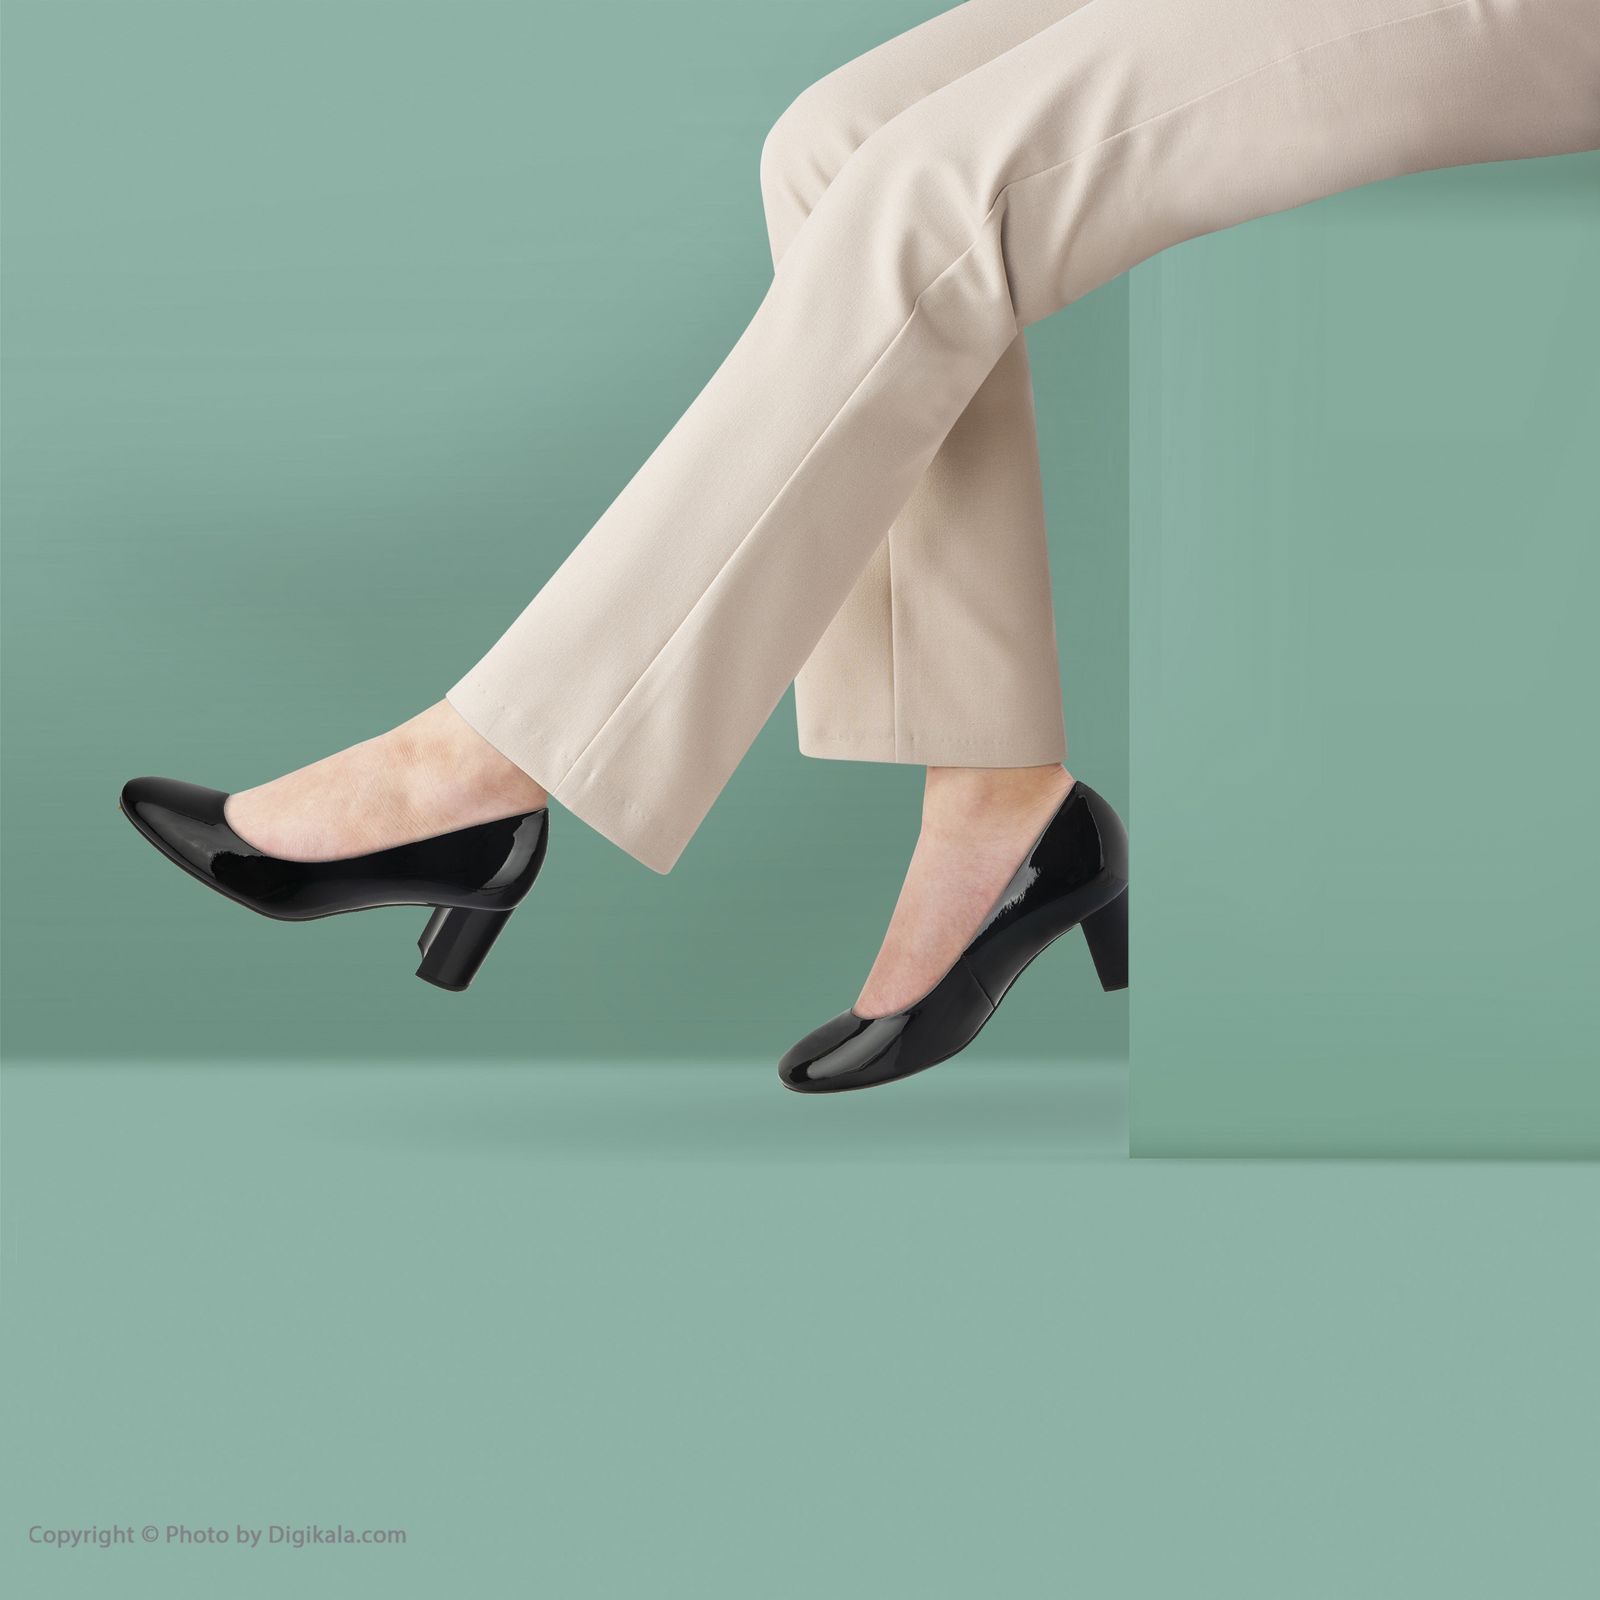 کفش زنانه هوگل مدل 0-185004-0100 - مشکی - 2